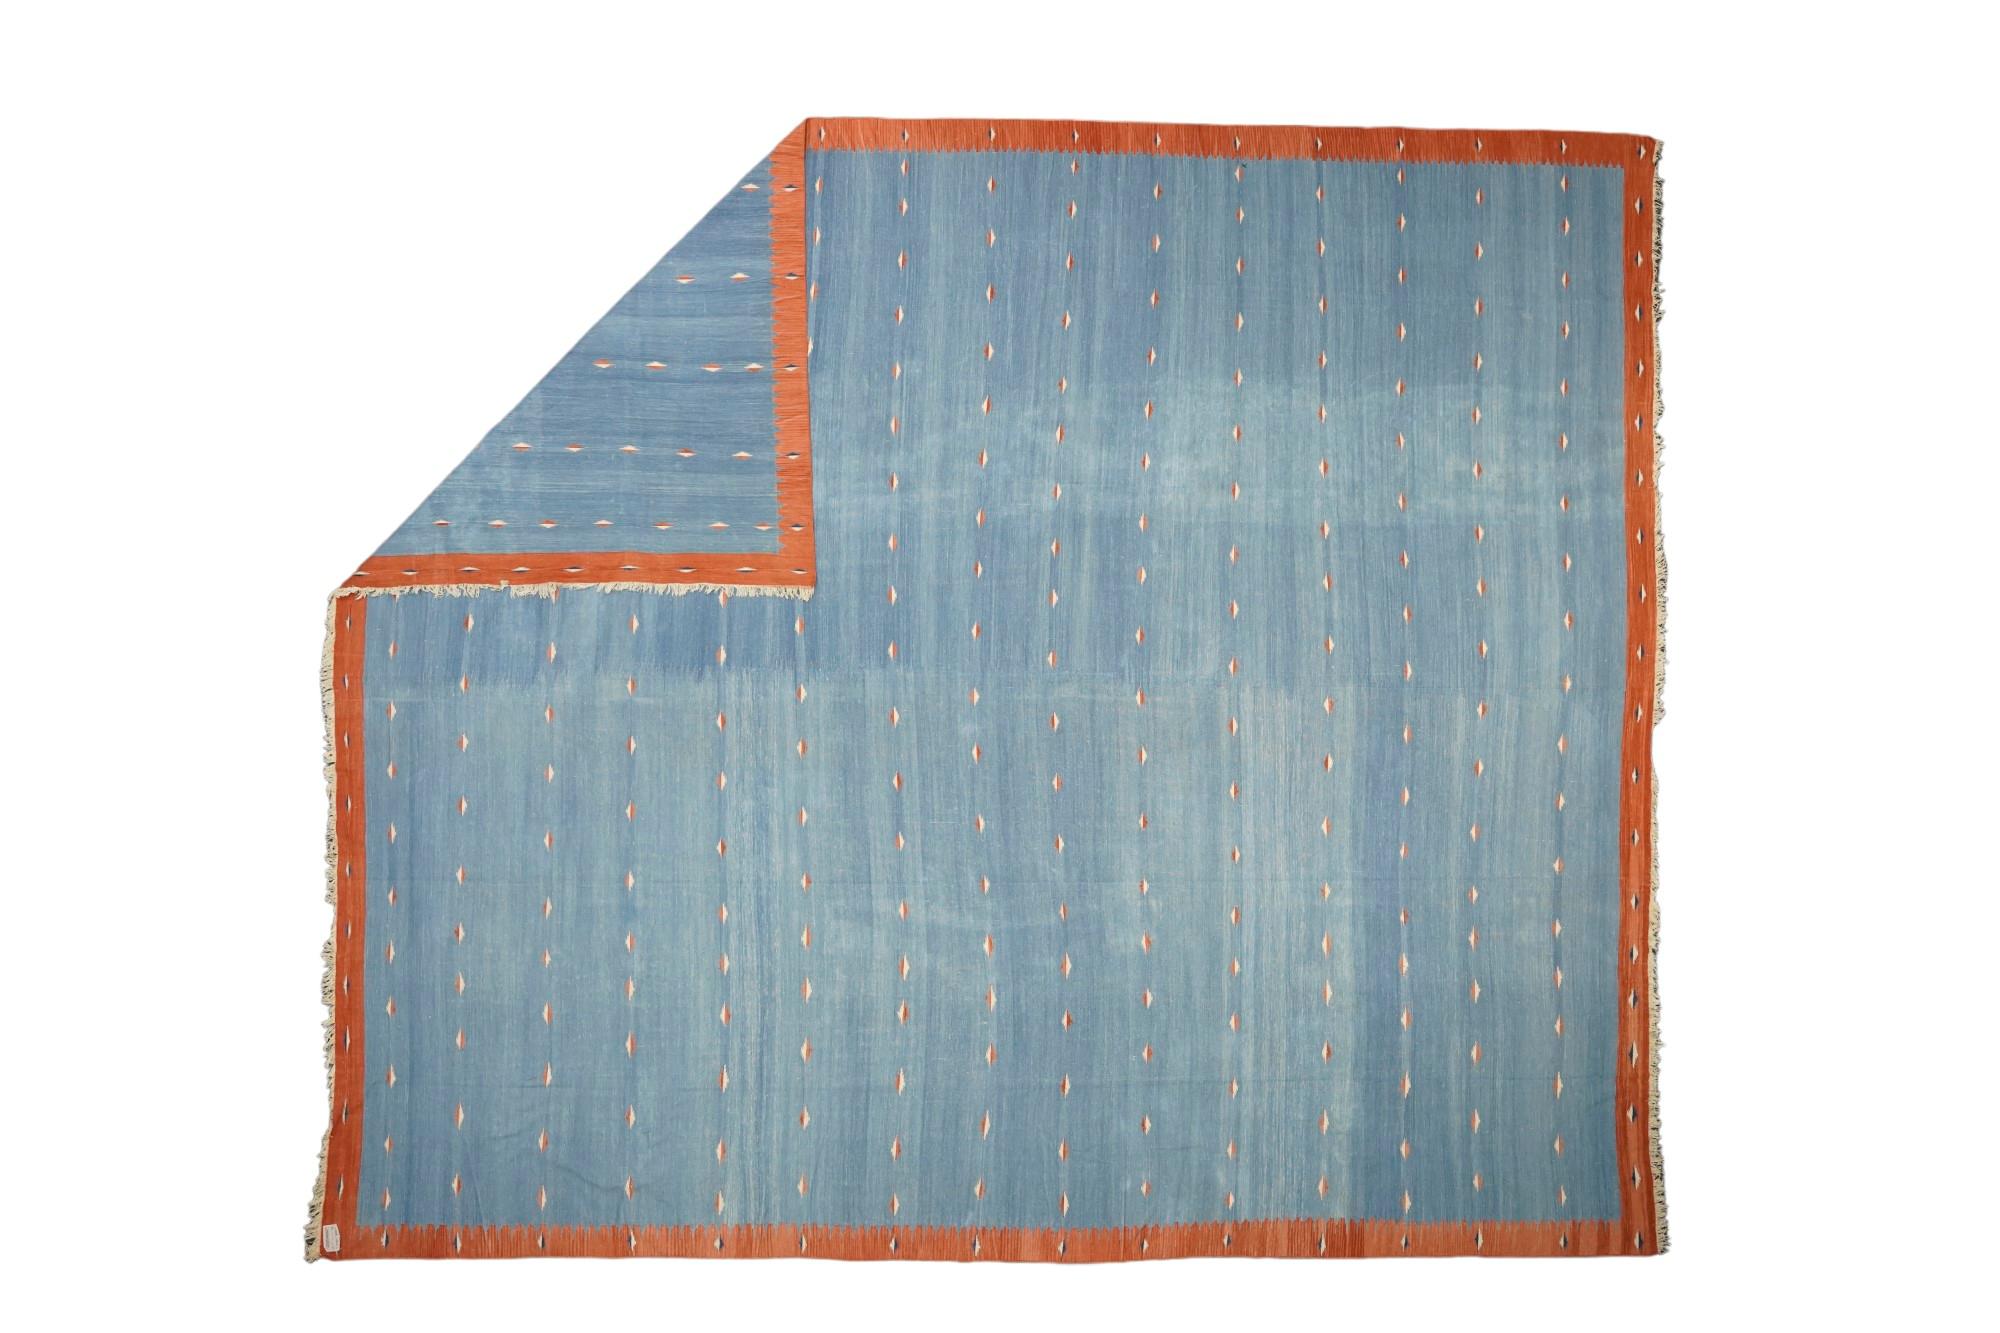 Ce tapis 12x14 est un rare tapis Dhurrie vintage issu d'une nouvelle collection du milieu du siècle de Rug & Kilim. Tissé à la main en laine à armure plate, il provient de l'Inde vers 1950-1960 et présente des rayures bleues avec une bordure orange